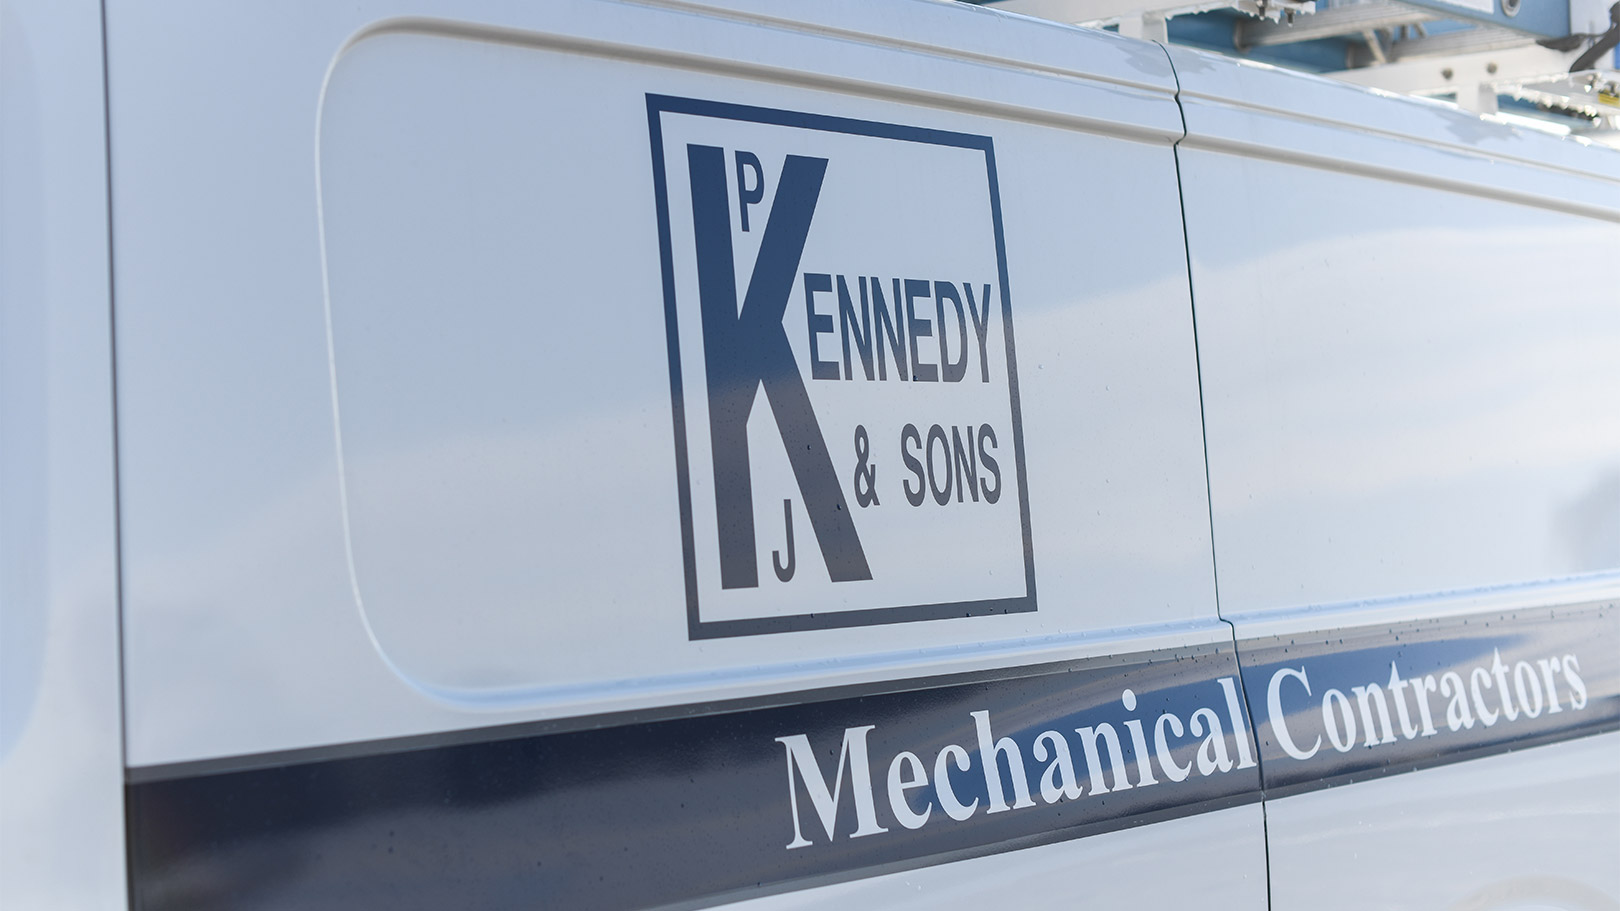 P.J. Kennedy logo on a fleet van.